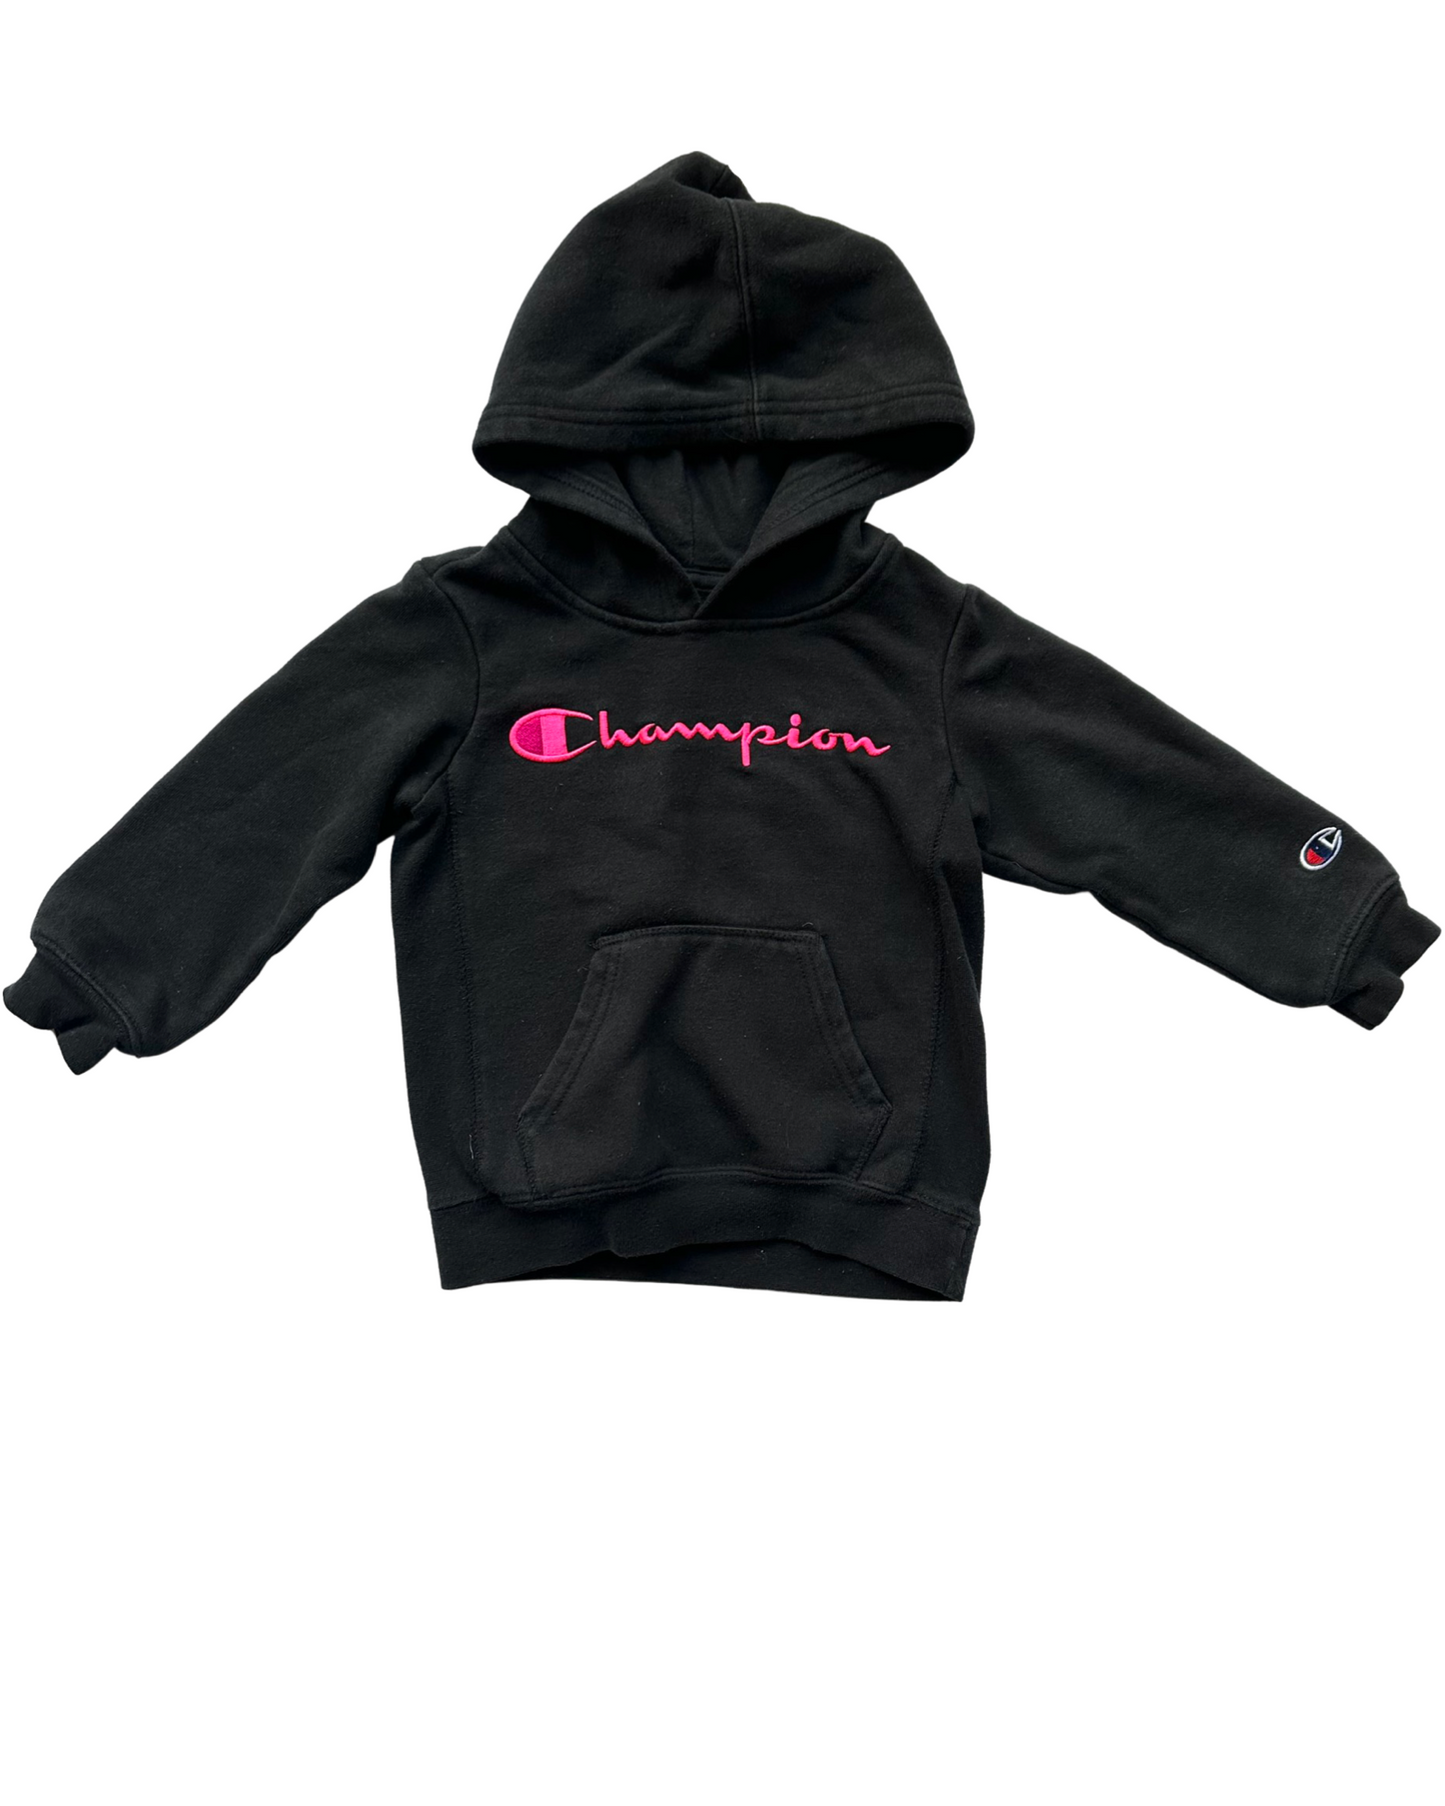 Vintage Champion hoodie in black (2-3yrs)